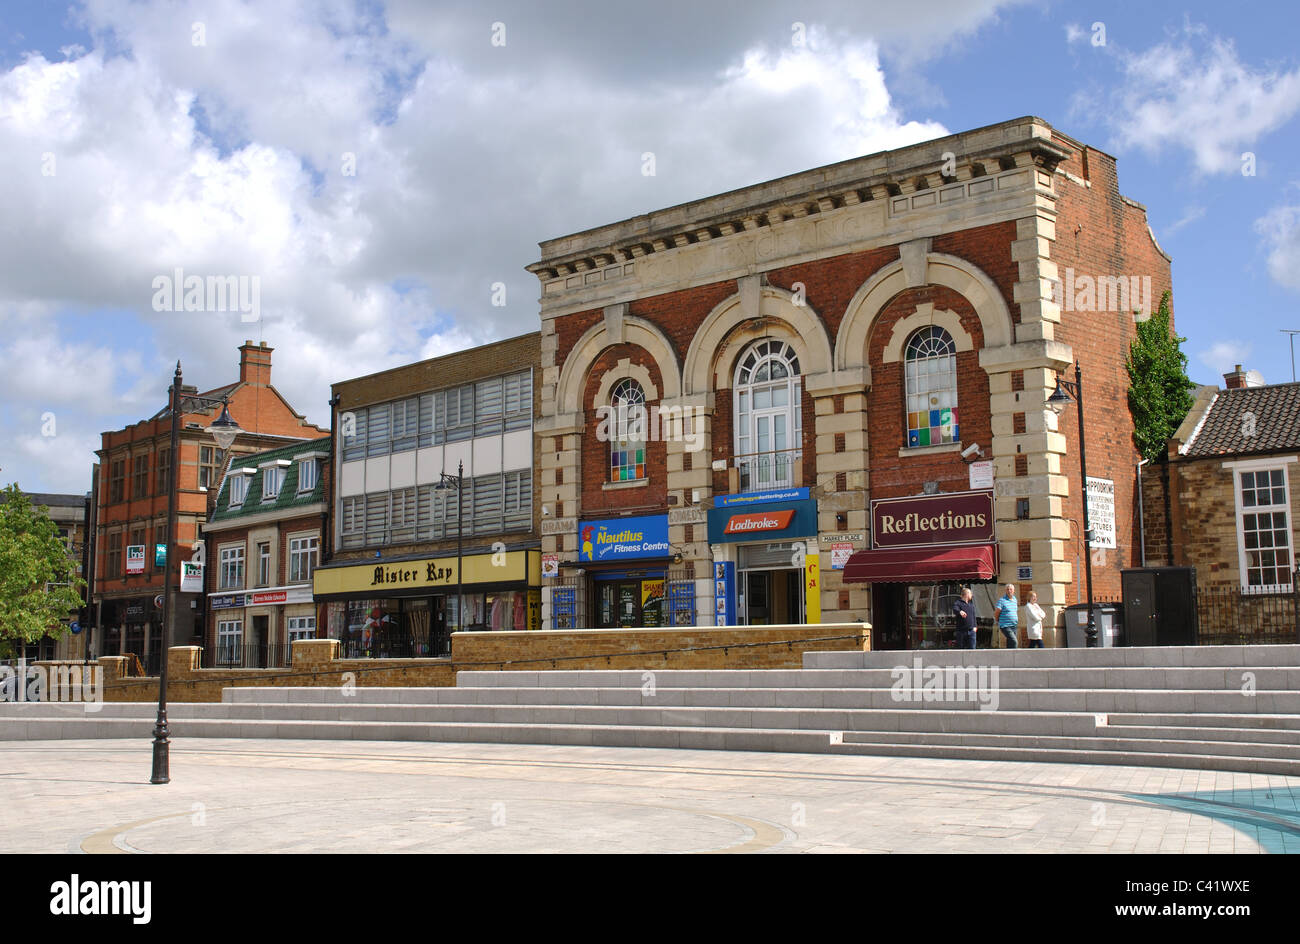 Market Place, Kettering, Northamptonshire, England, UK Stock Photo